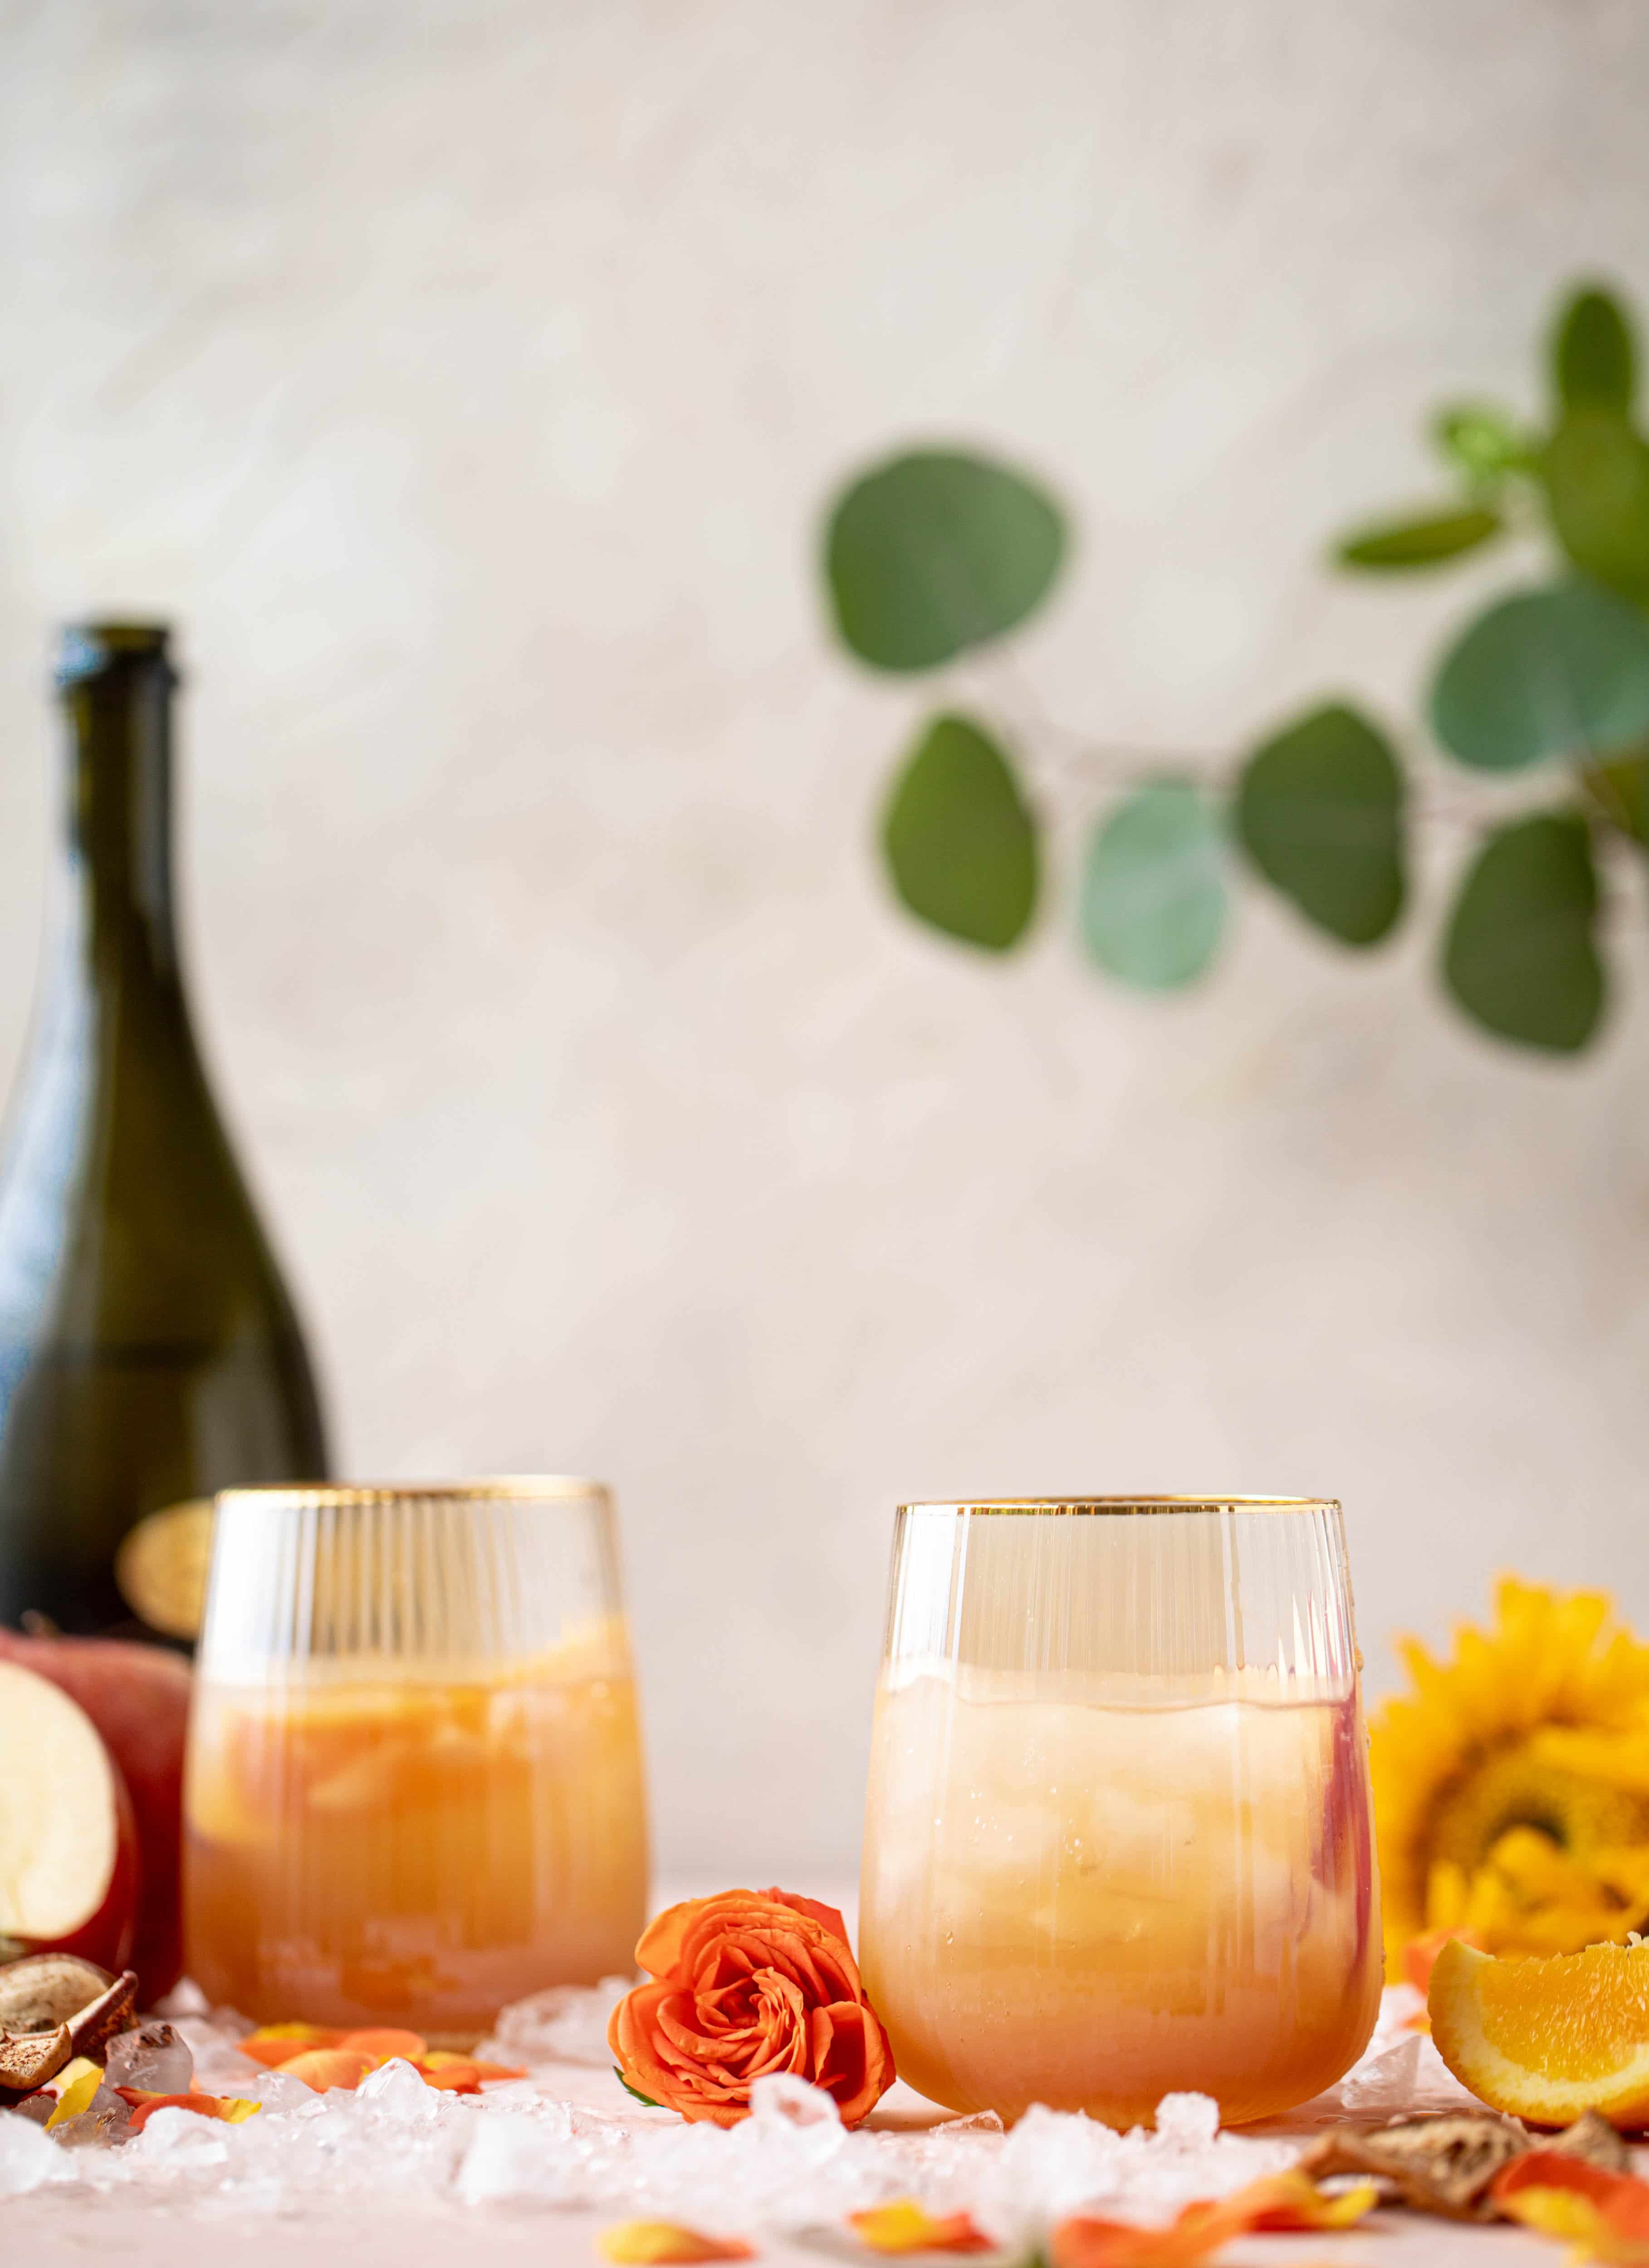 这款苹果酒喷雾是经典的阿罗尔喷雾的秋季款。苹果酒、普罗赛克酒和aperol酒在这款清爽的鸡尾酒中完美结合!